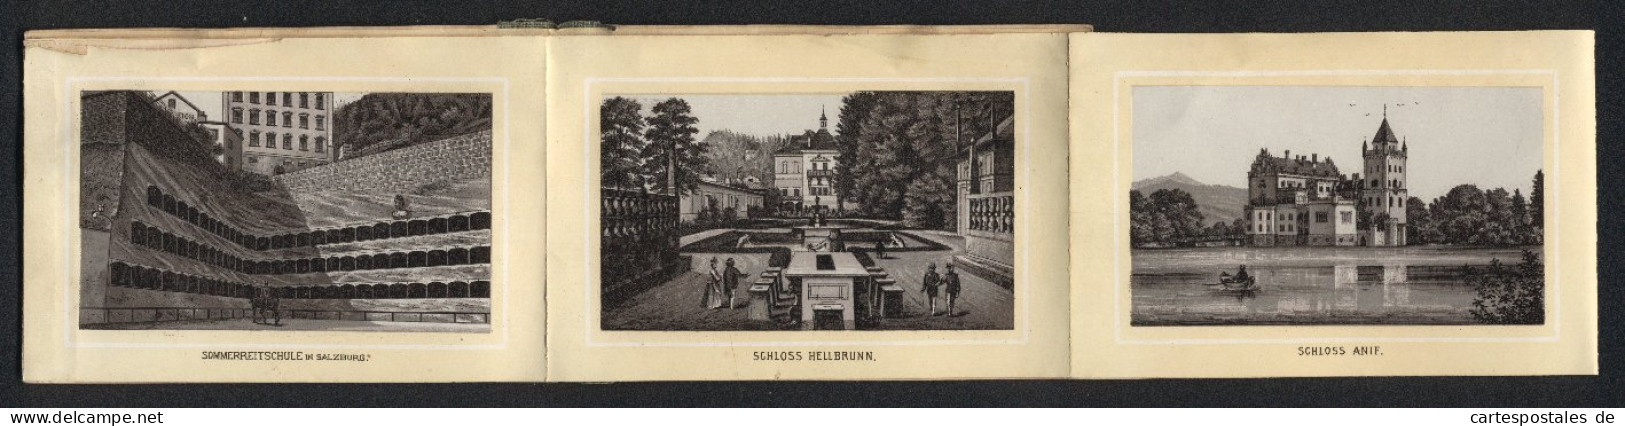 Leporello-Album Salzburg Mit 12 Lithographie-Ansichten, Berchtesgaden, Schloss Anif, Sommerreitschule, Mozartplatz  - Lithographien